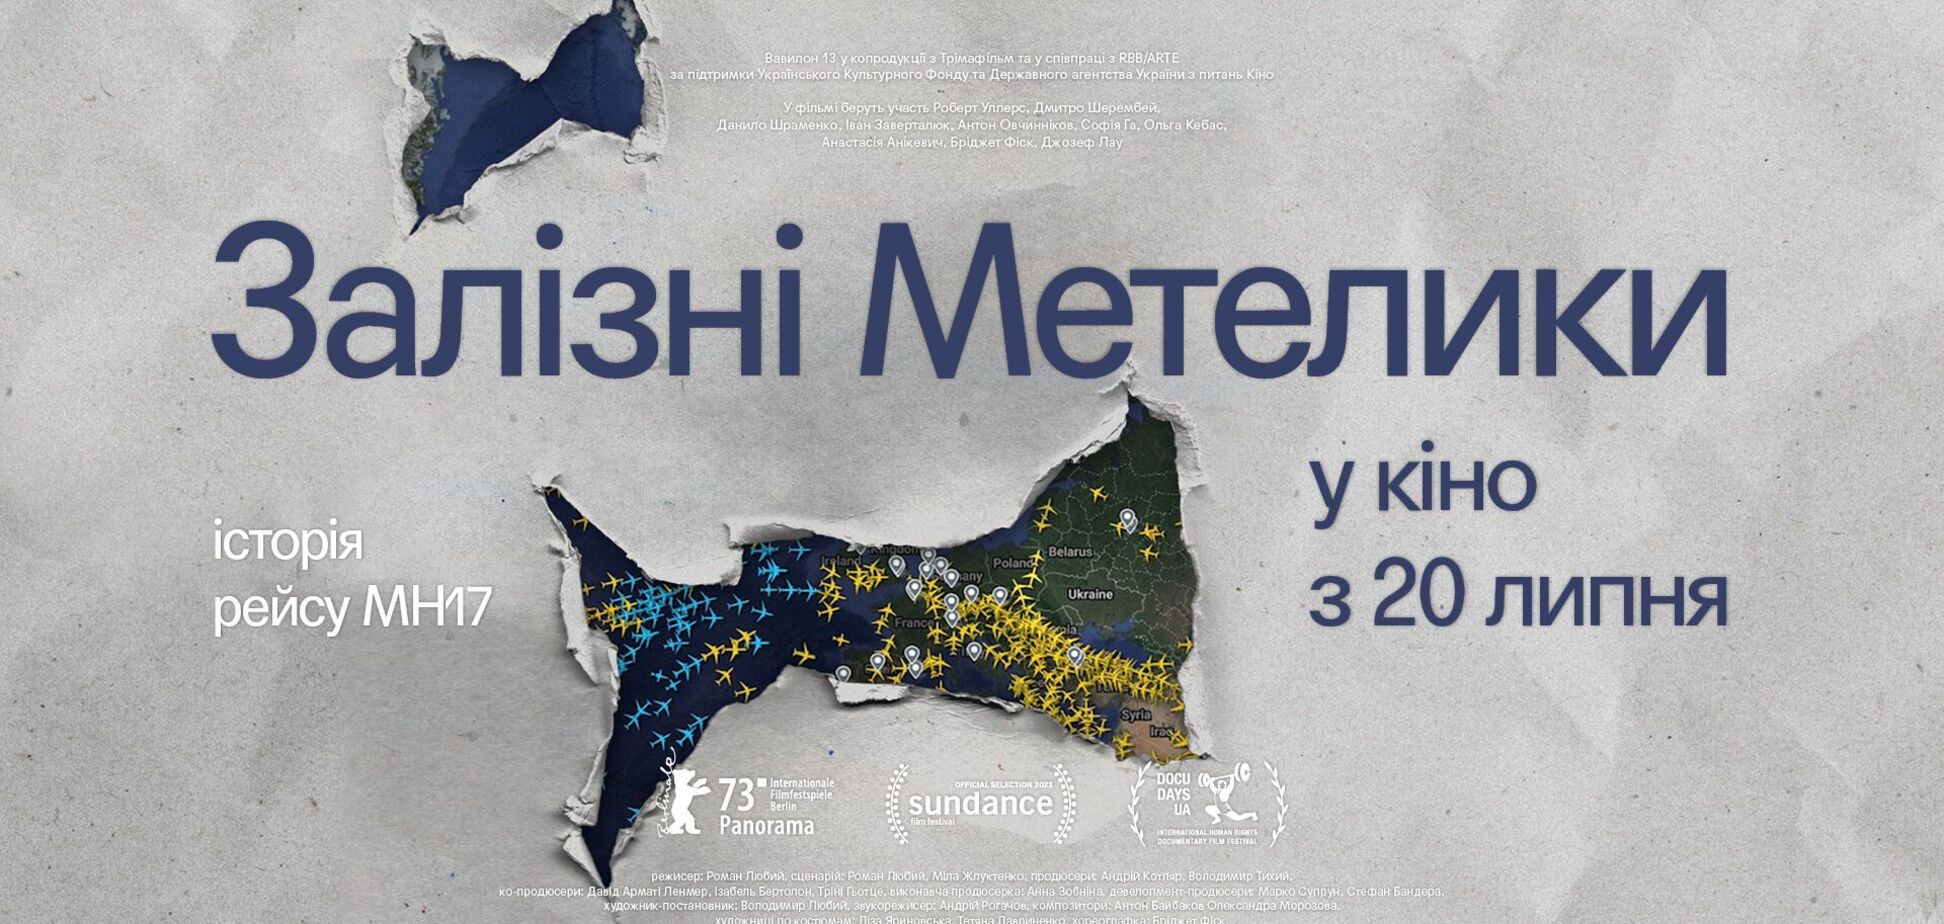 К годовщине трагедии рейса MH17: в украинский прокат выйдет лента 'Железные бабочки'